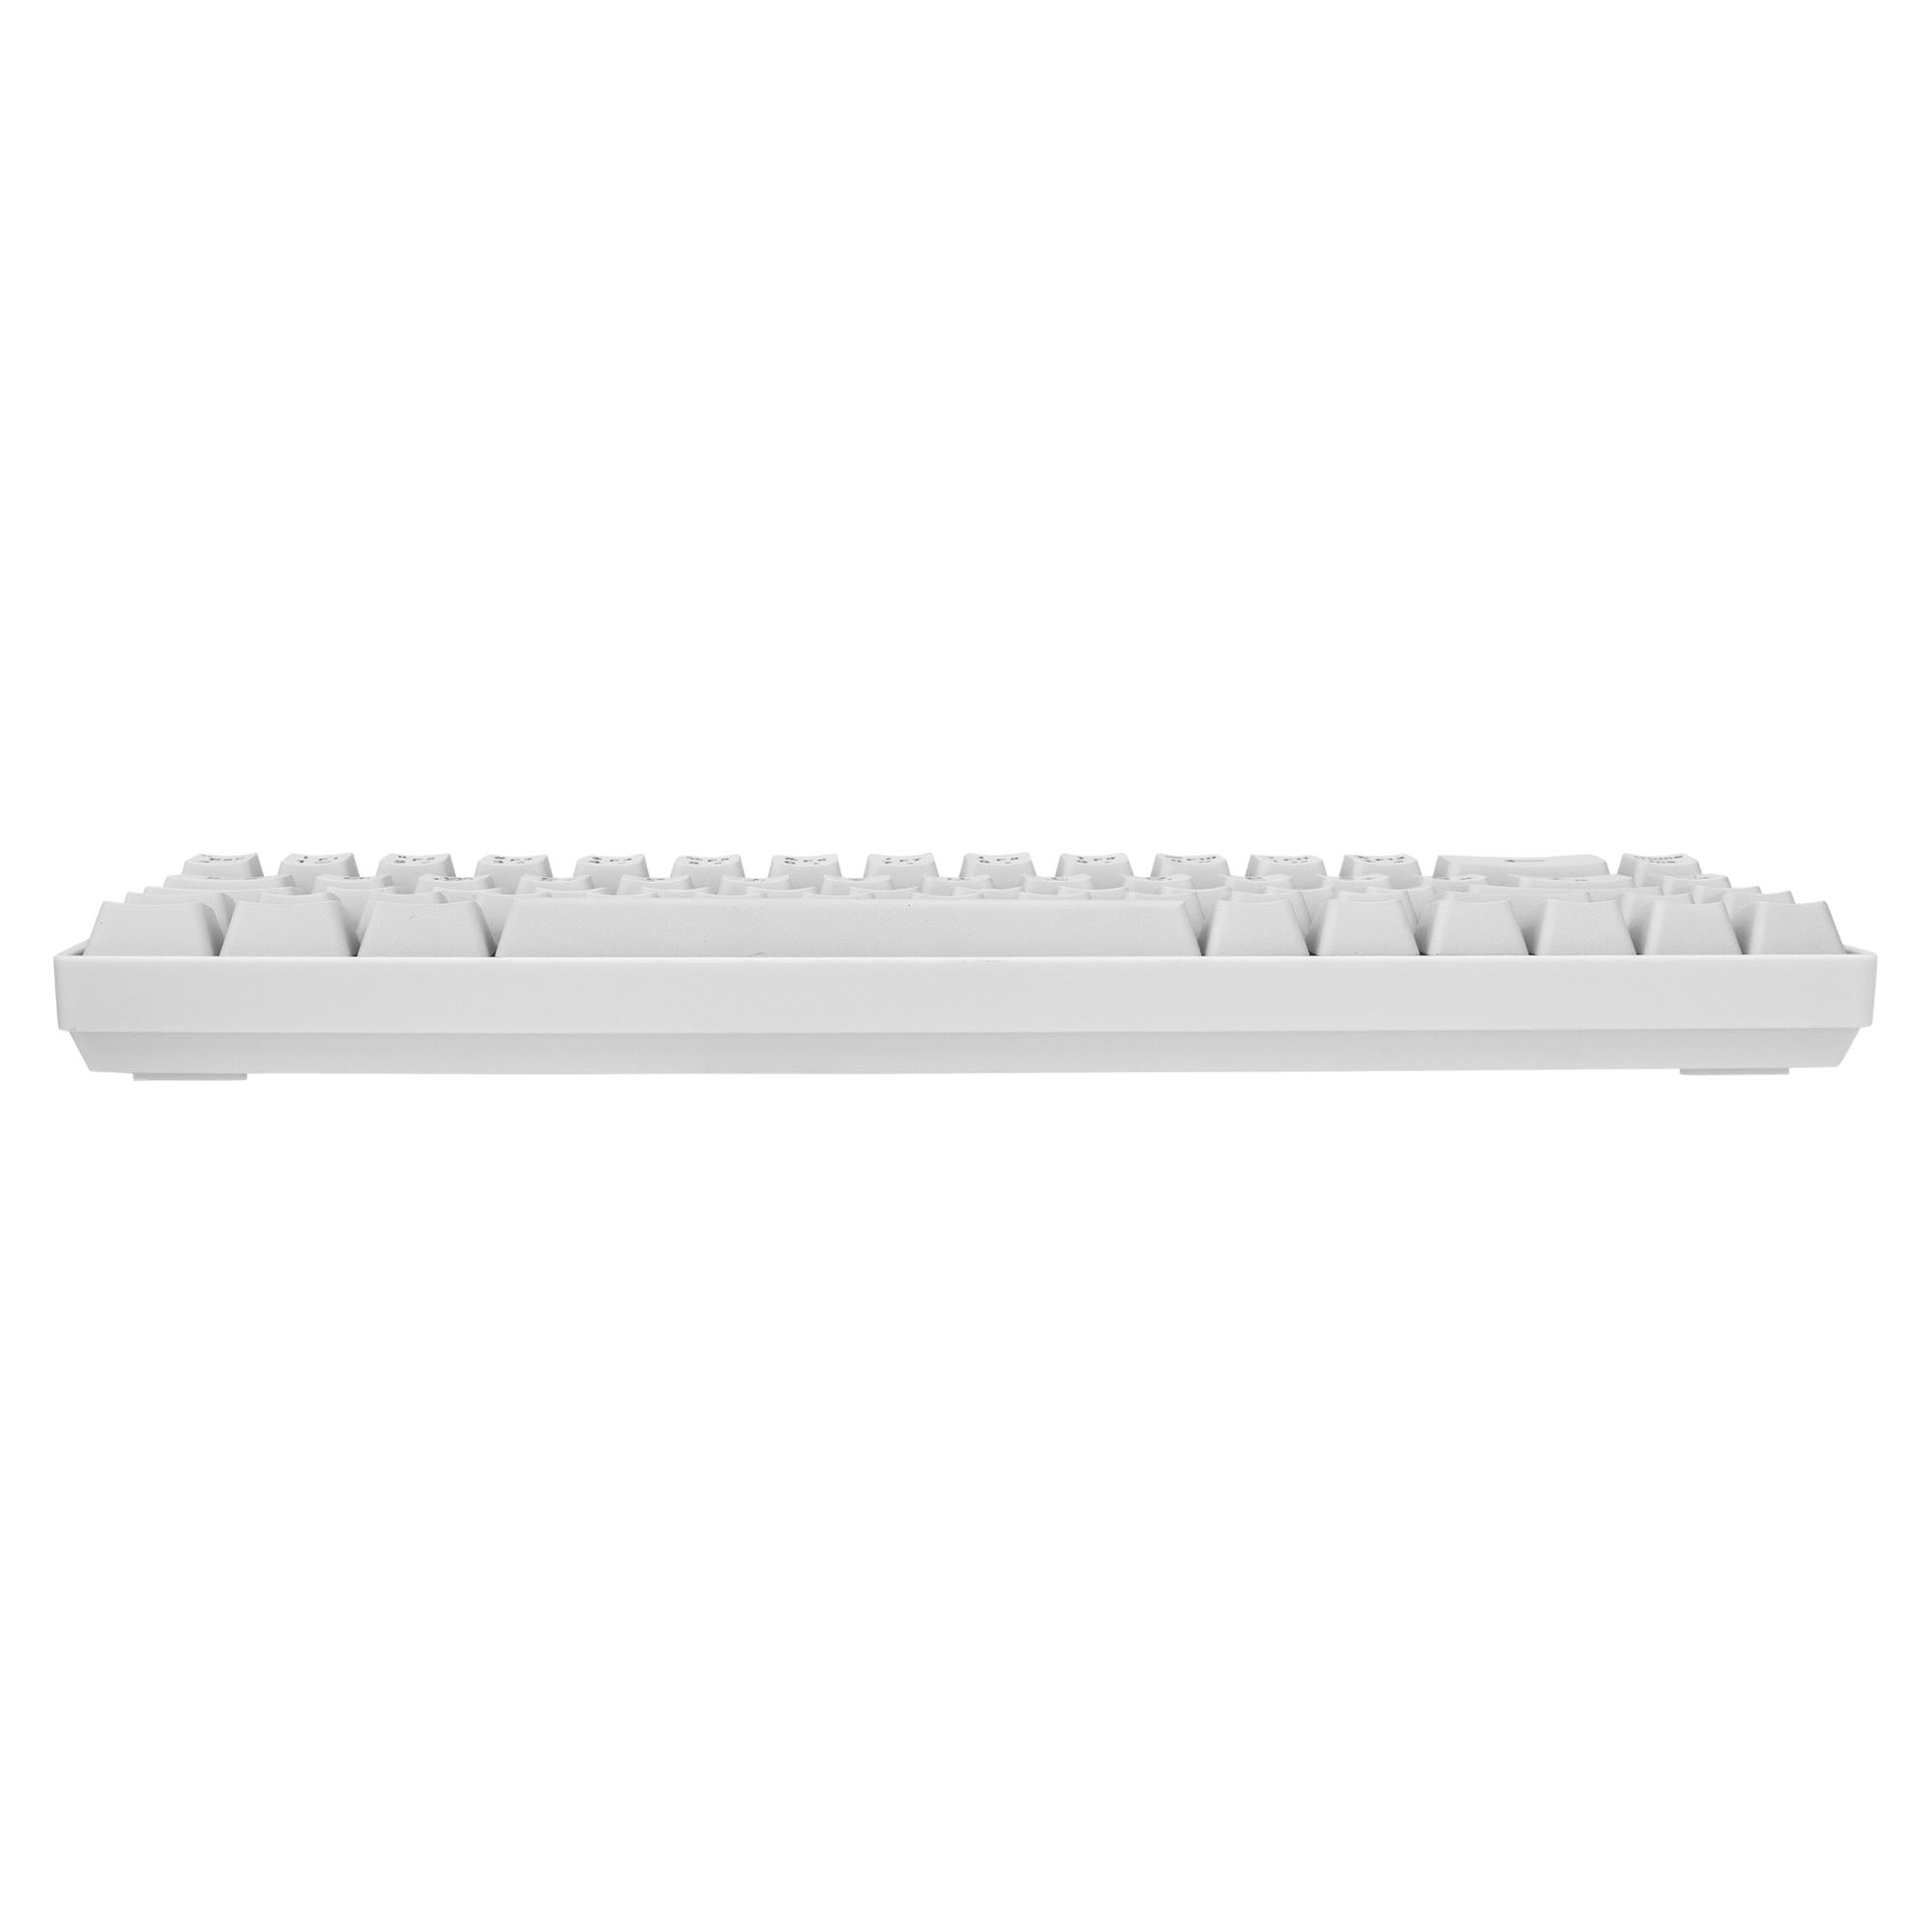 Tastatura White Shark GK-2201 RONIN Bijela-HR